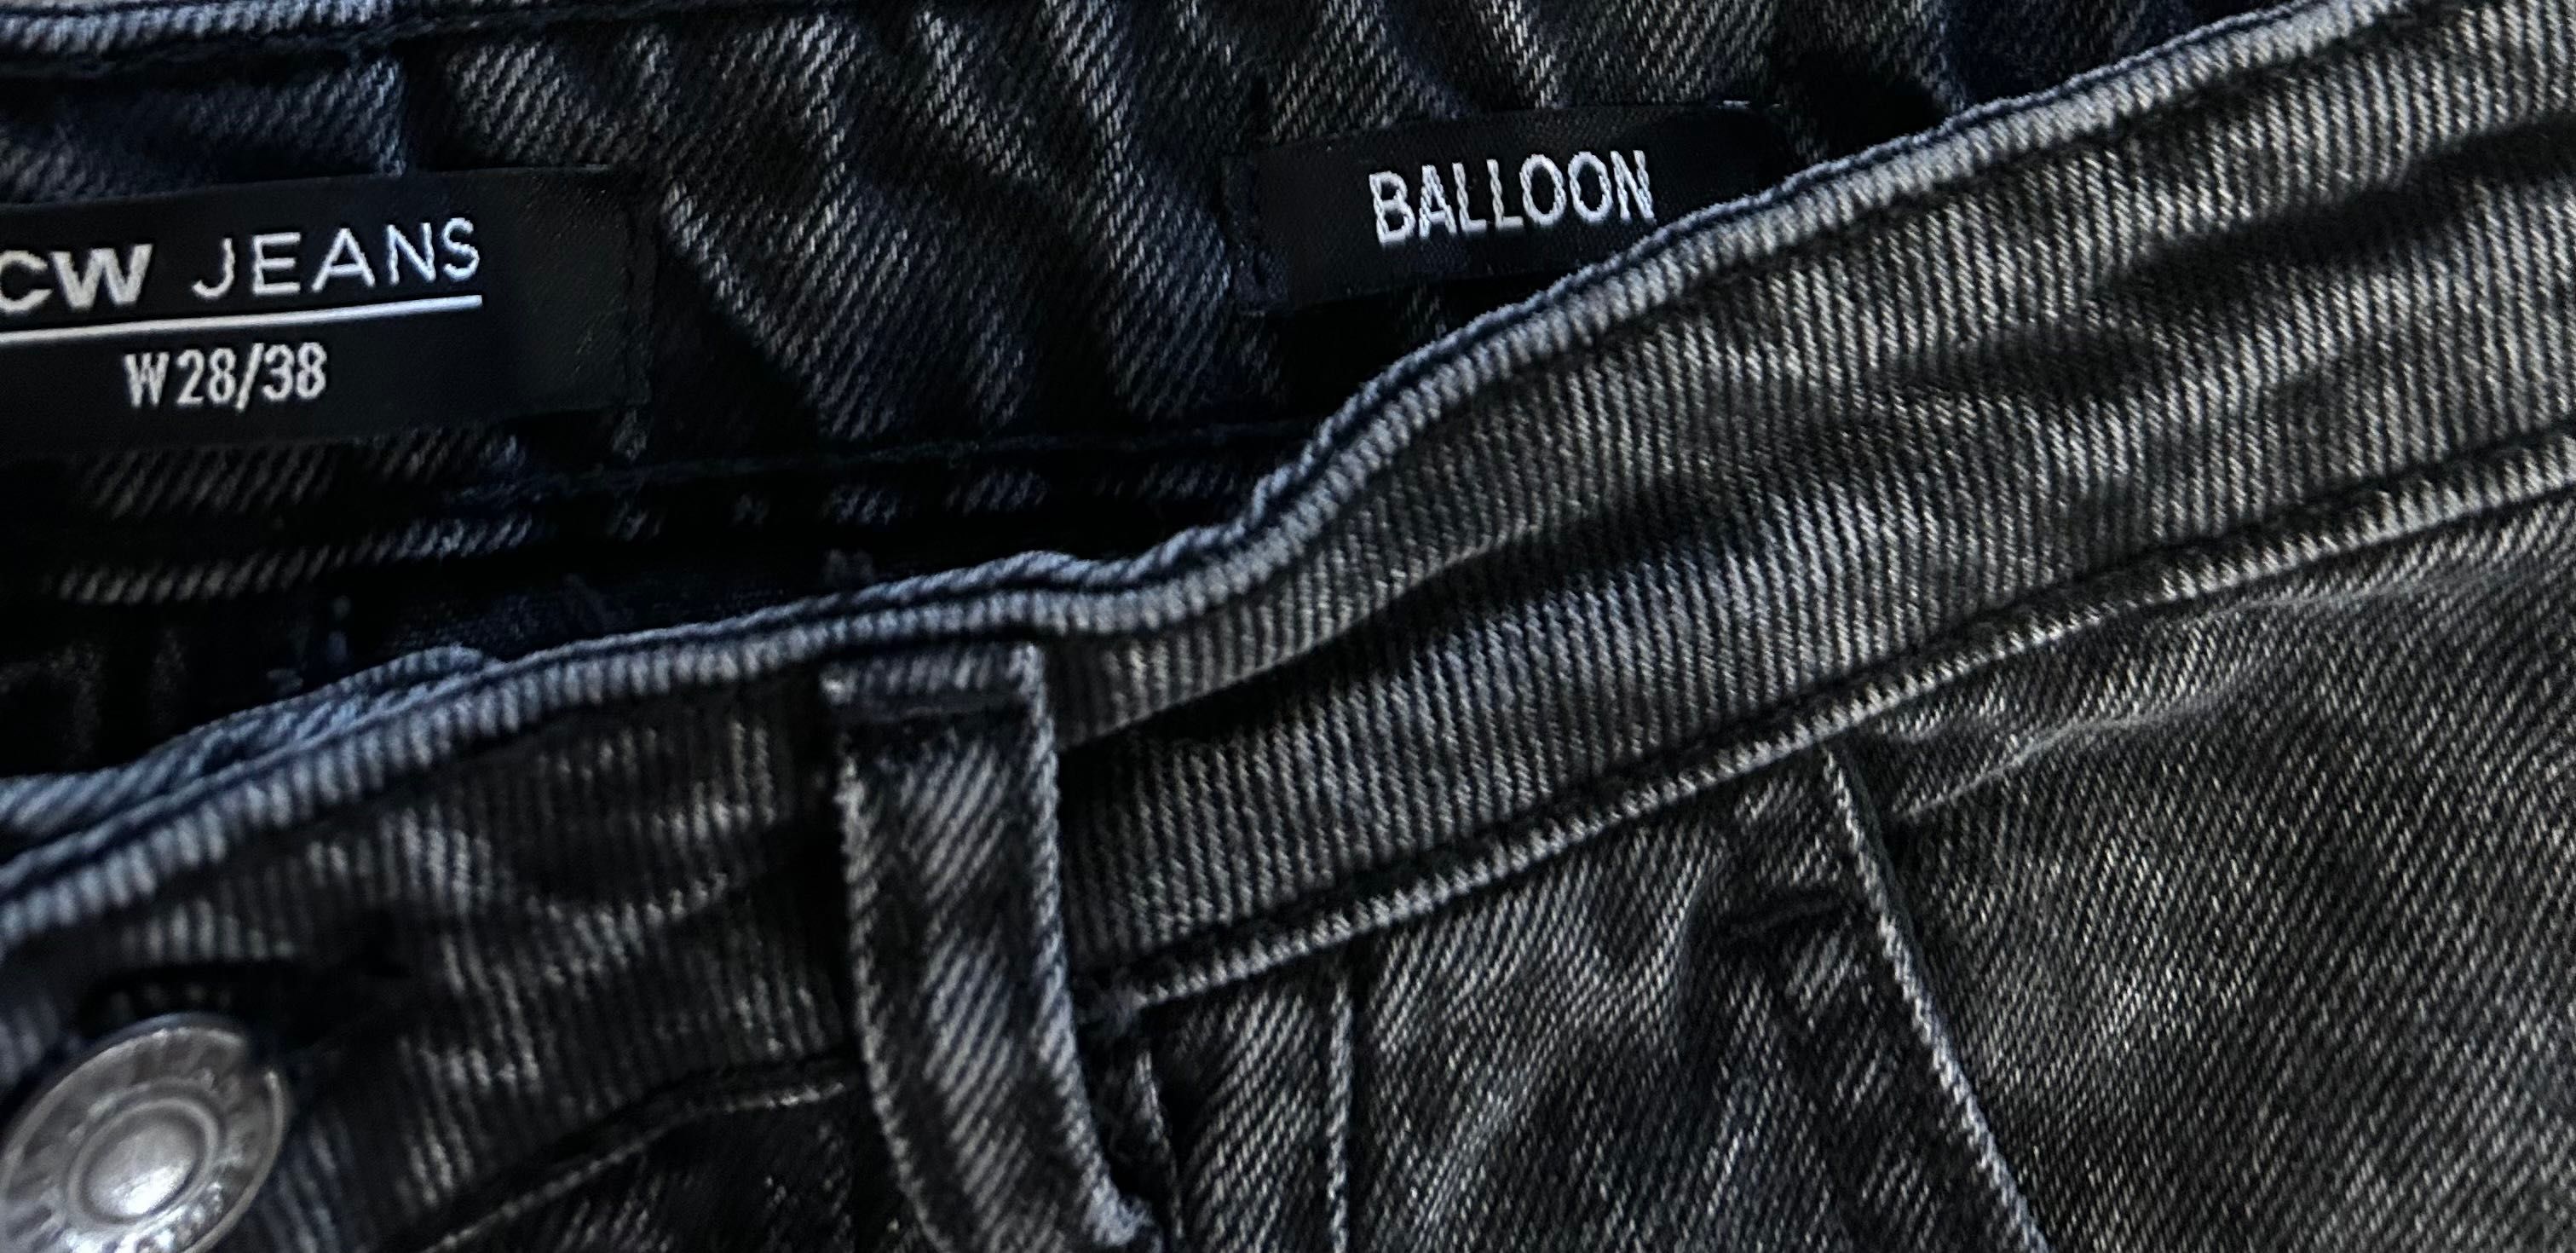 LCW Jeans Ballon style